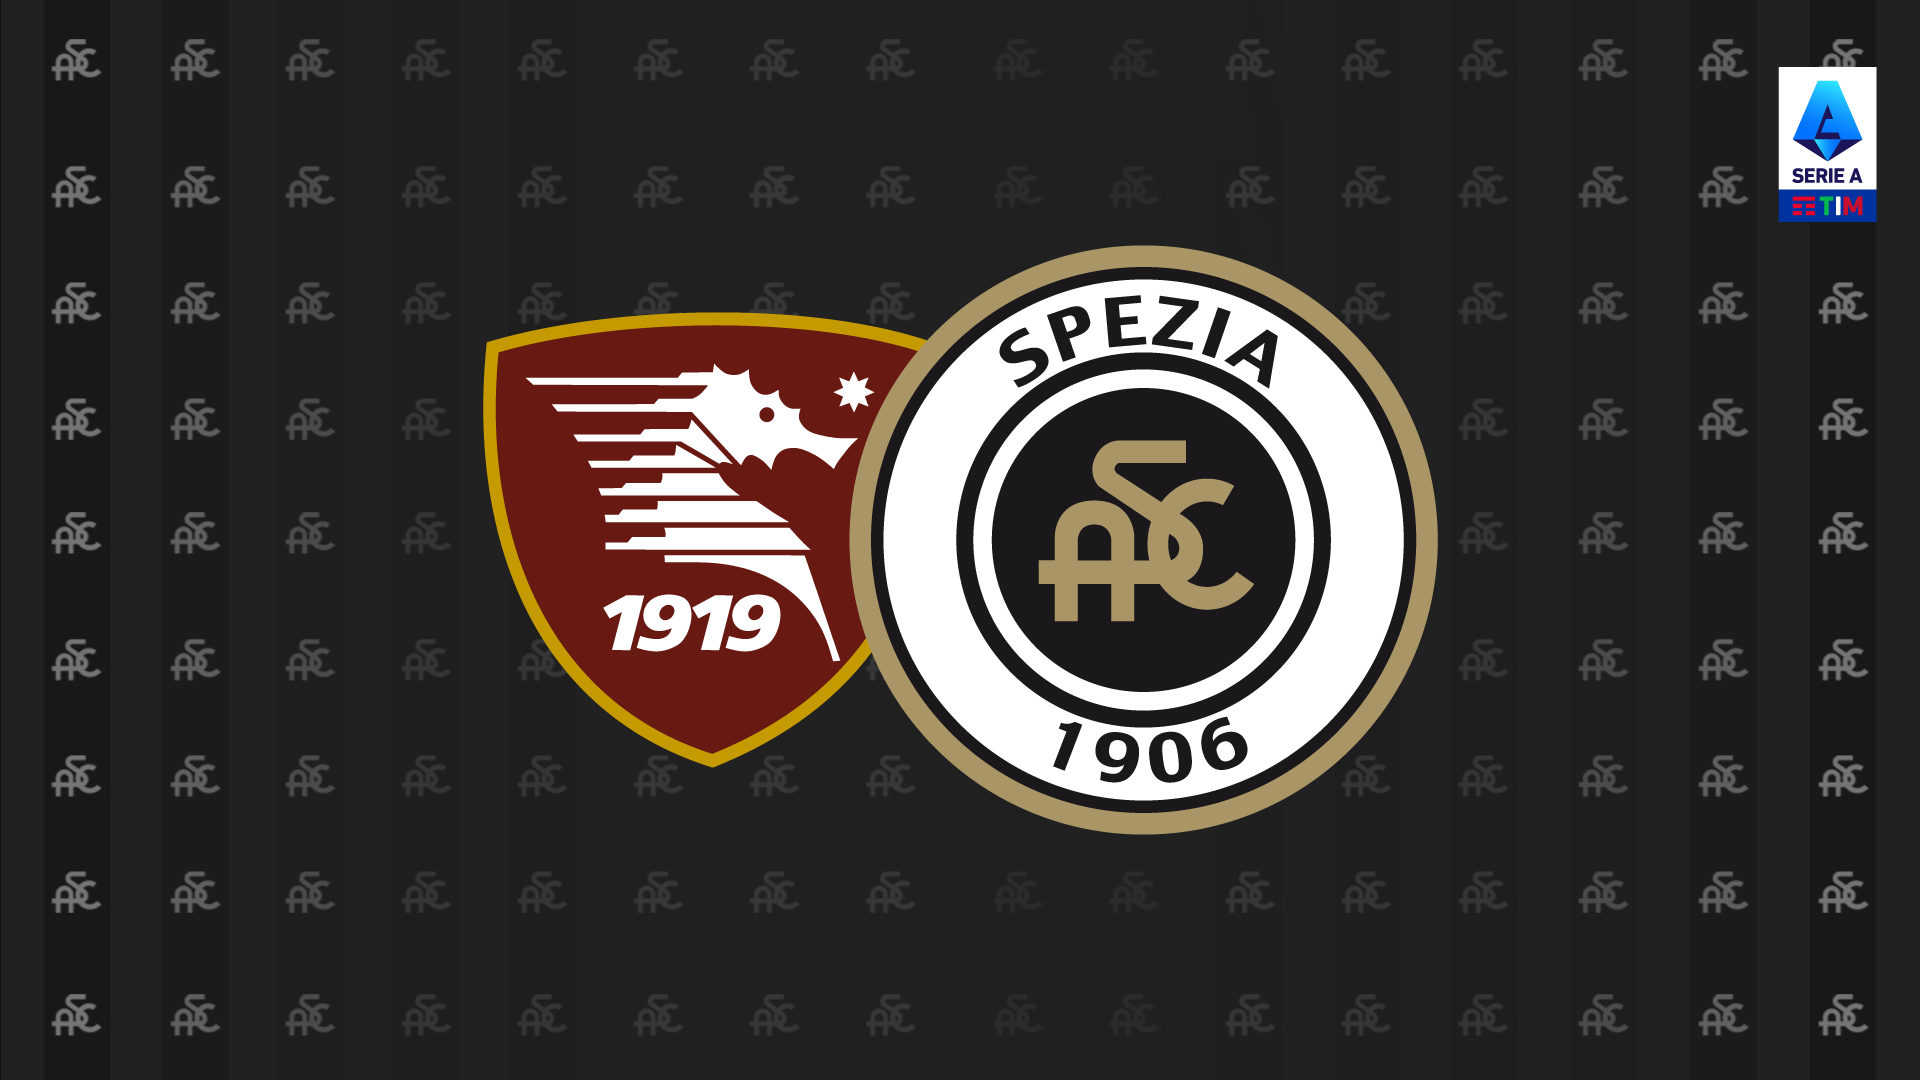 Serie A TIM 21/22: Salernitana-Spezia 2-2